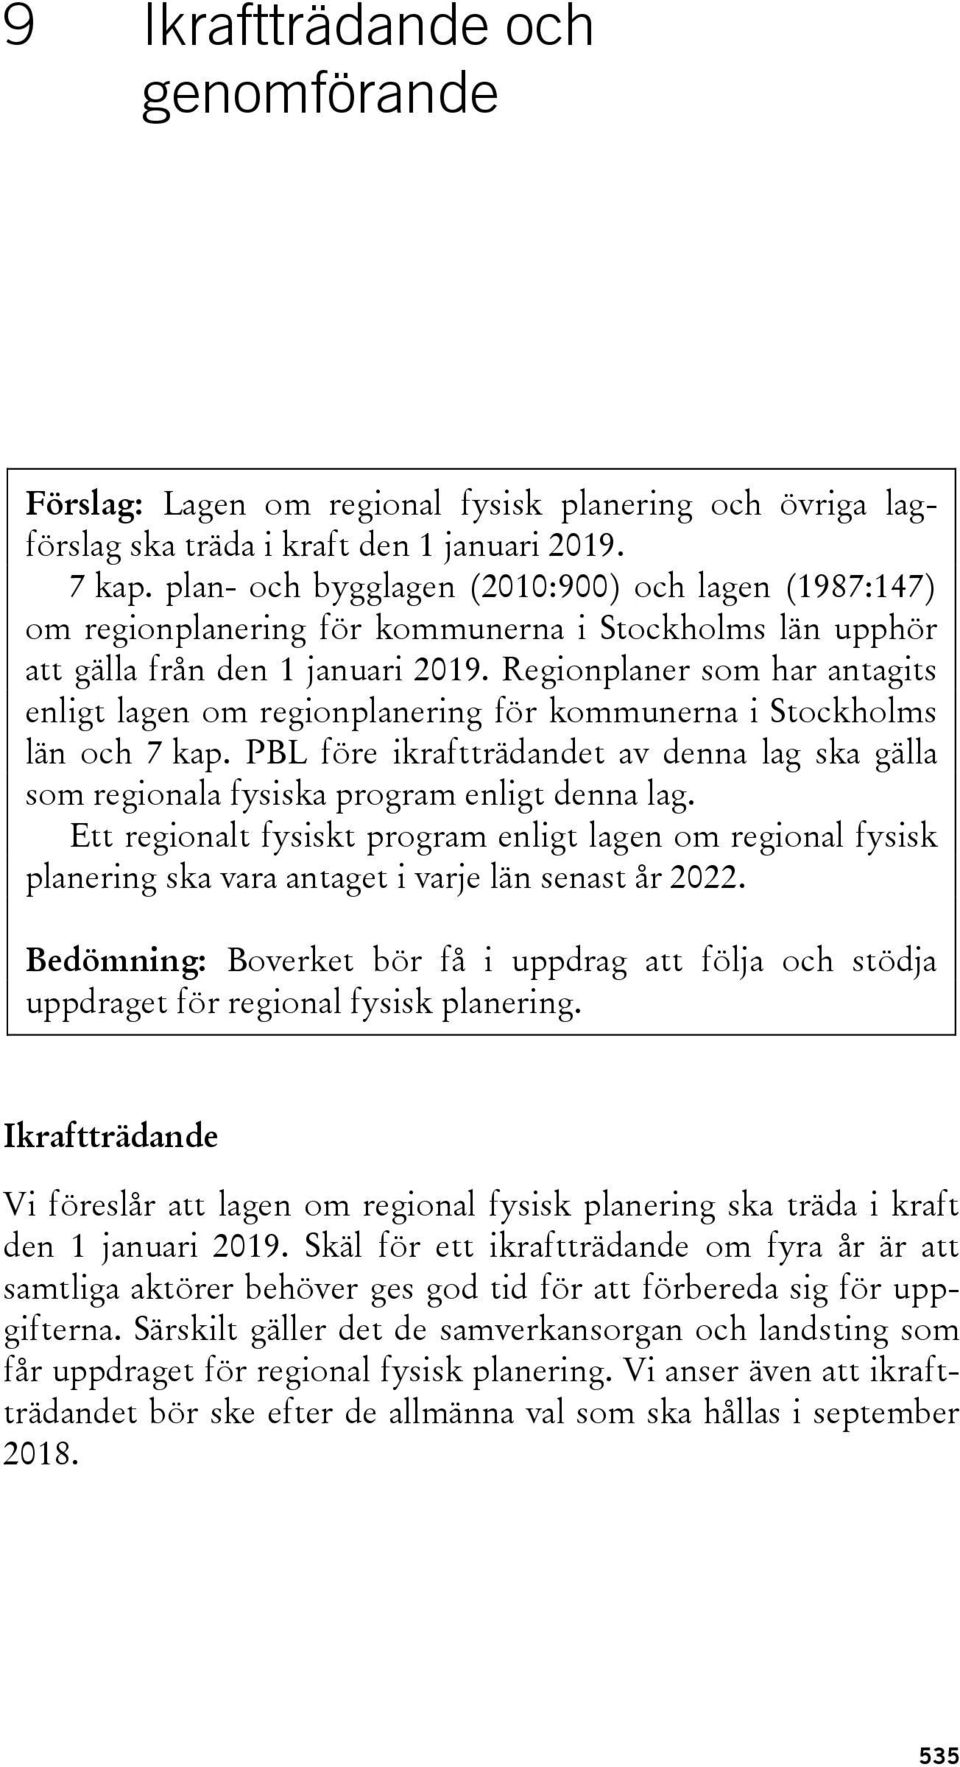 Regionplaner som har antagits enligt lagen om regionplanering för kommunerna i Stockholms län och 7 kap. PBL före ikraftträdandet av denna lag ska gälla som regionala fysiska program enligt denna lag.